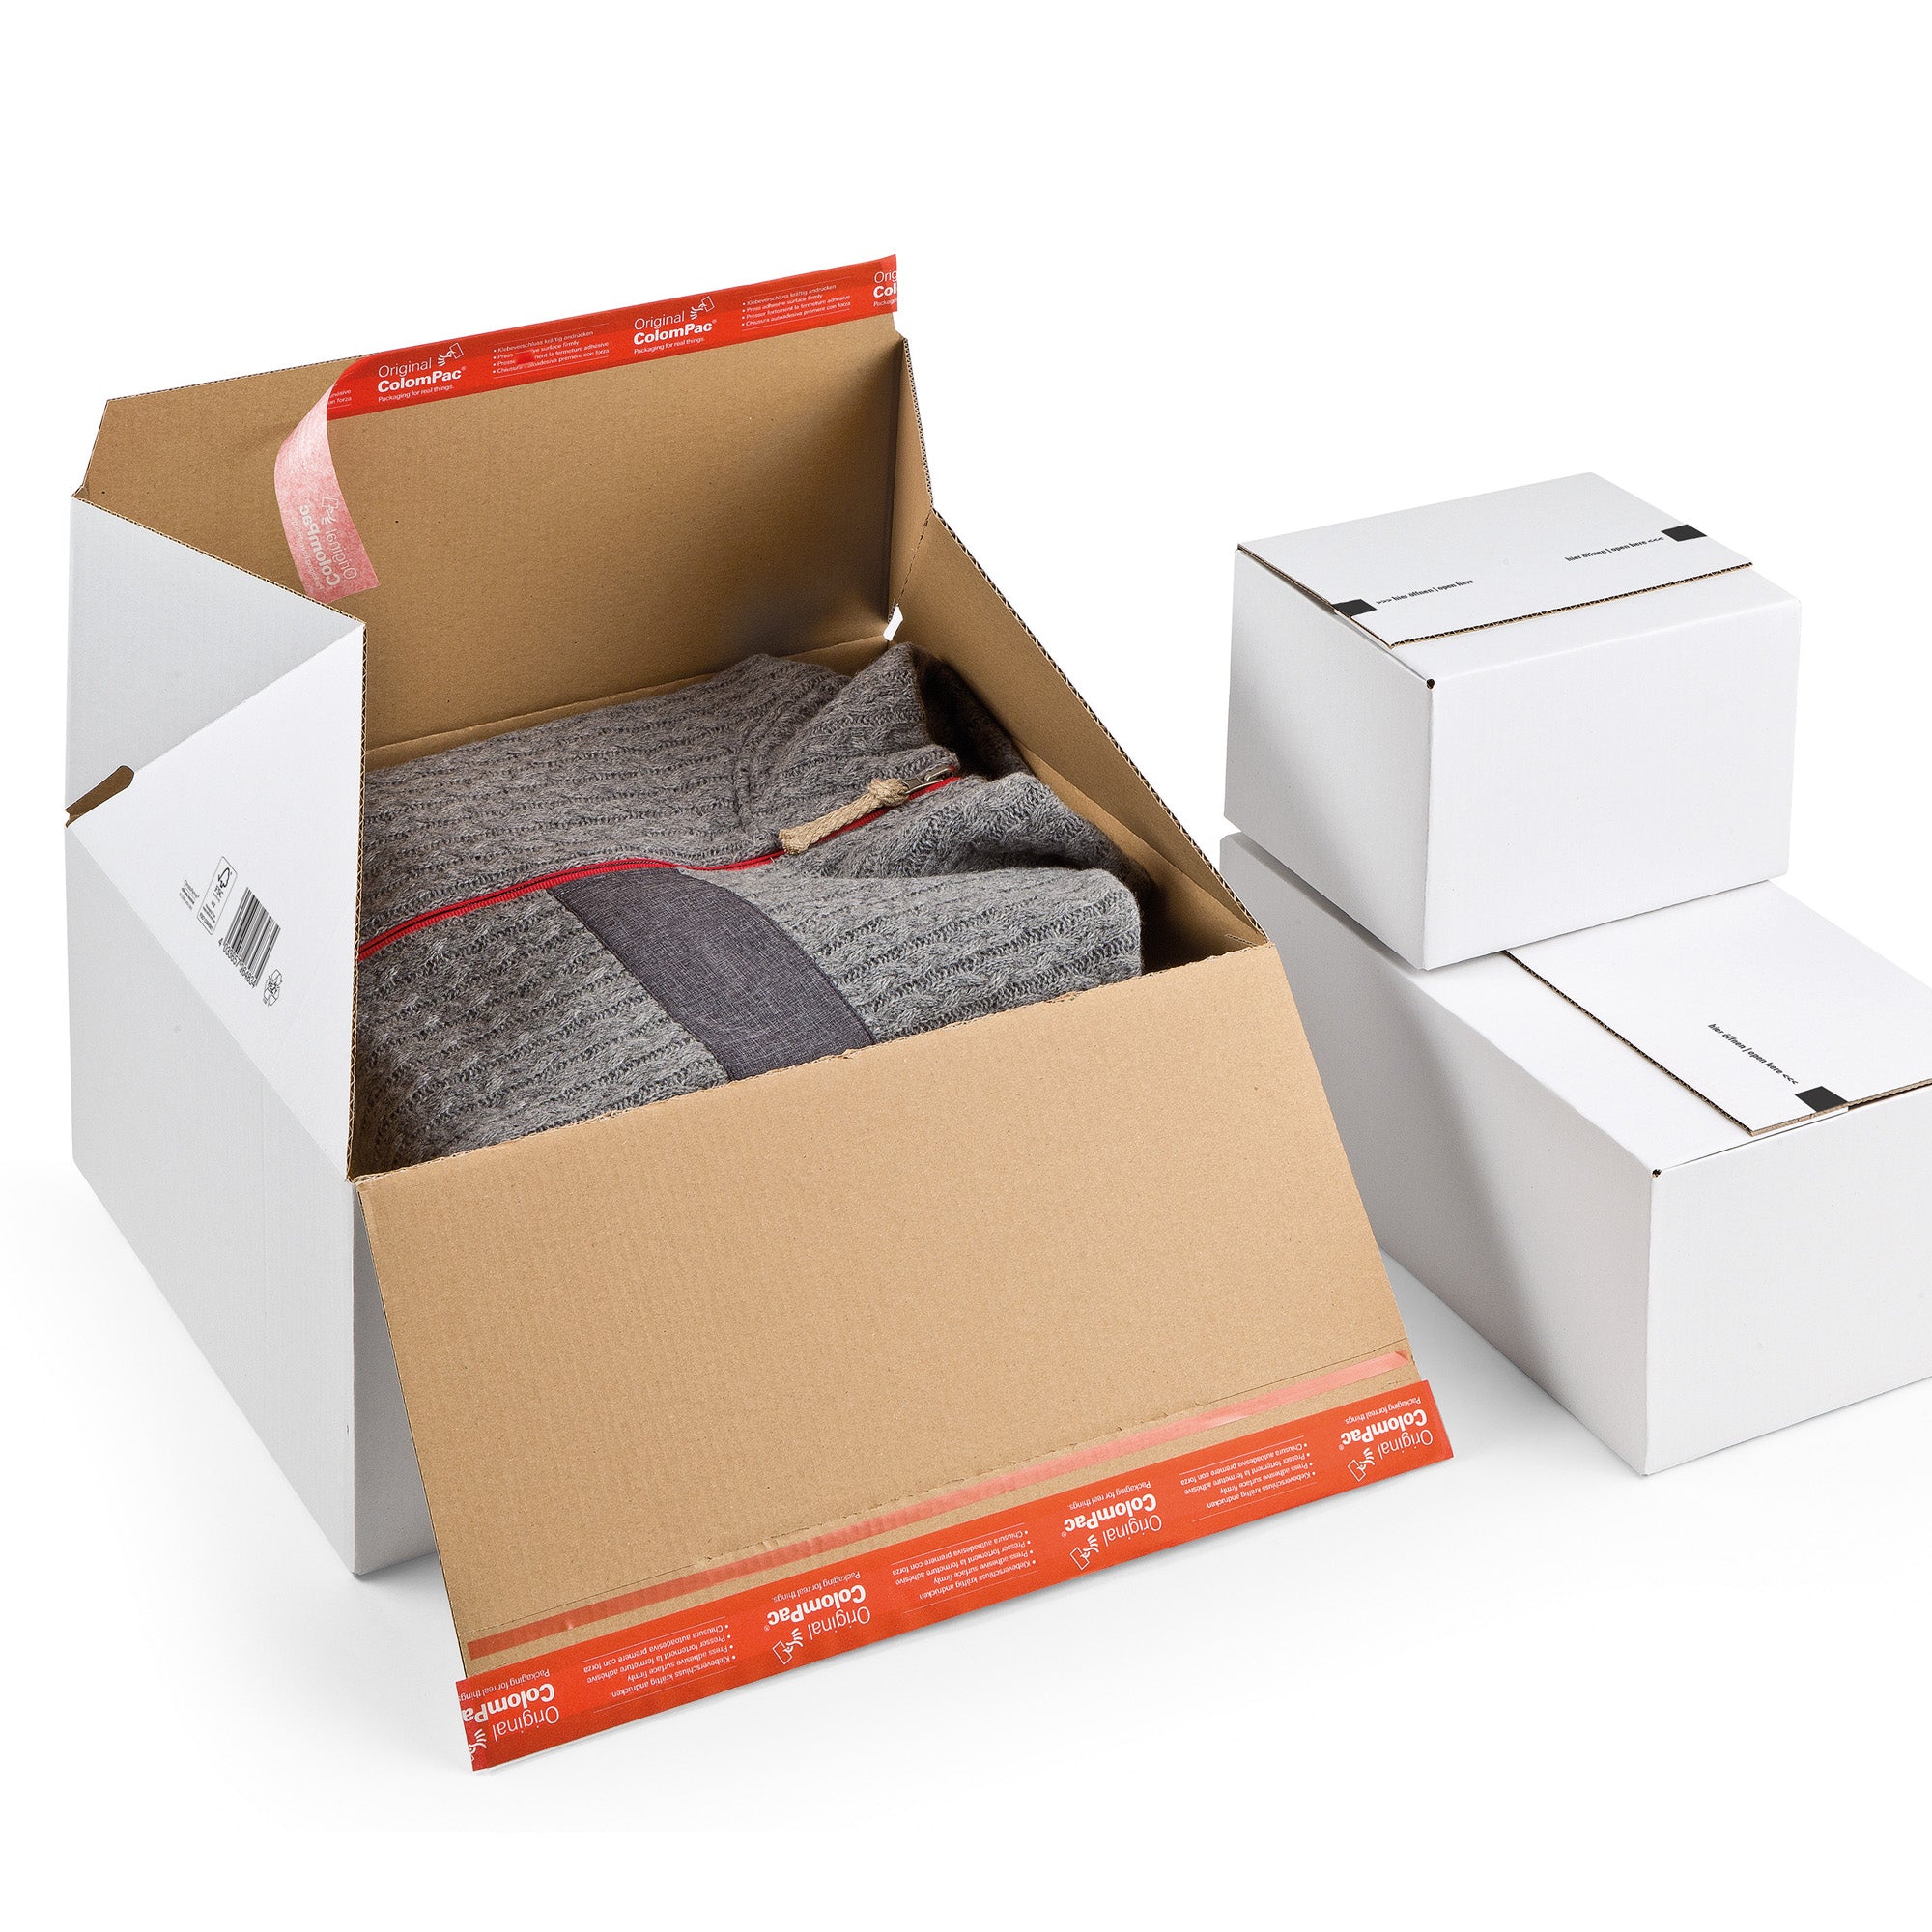 colompac-scatola-spedizione-e-commerce-30-6x18-6x12-7cm-bianco